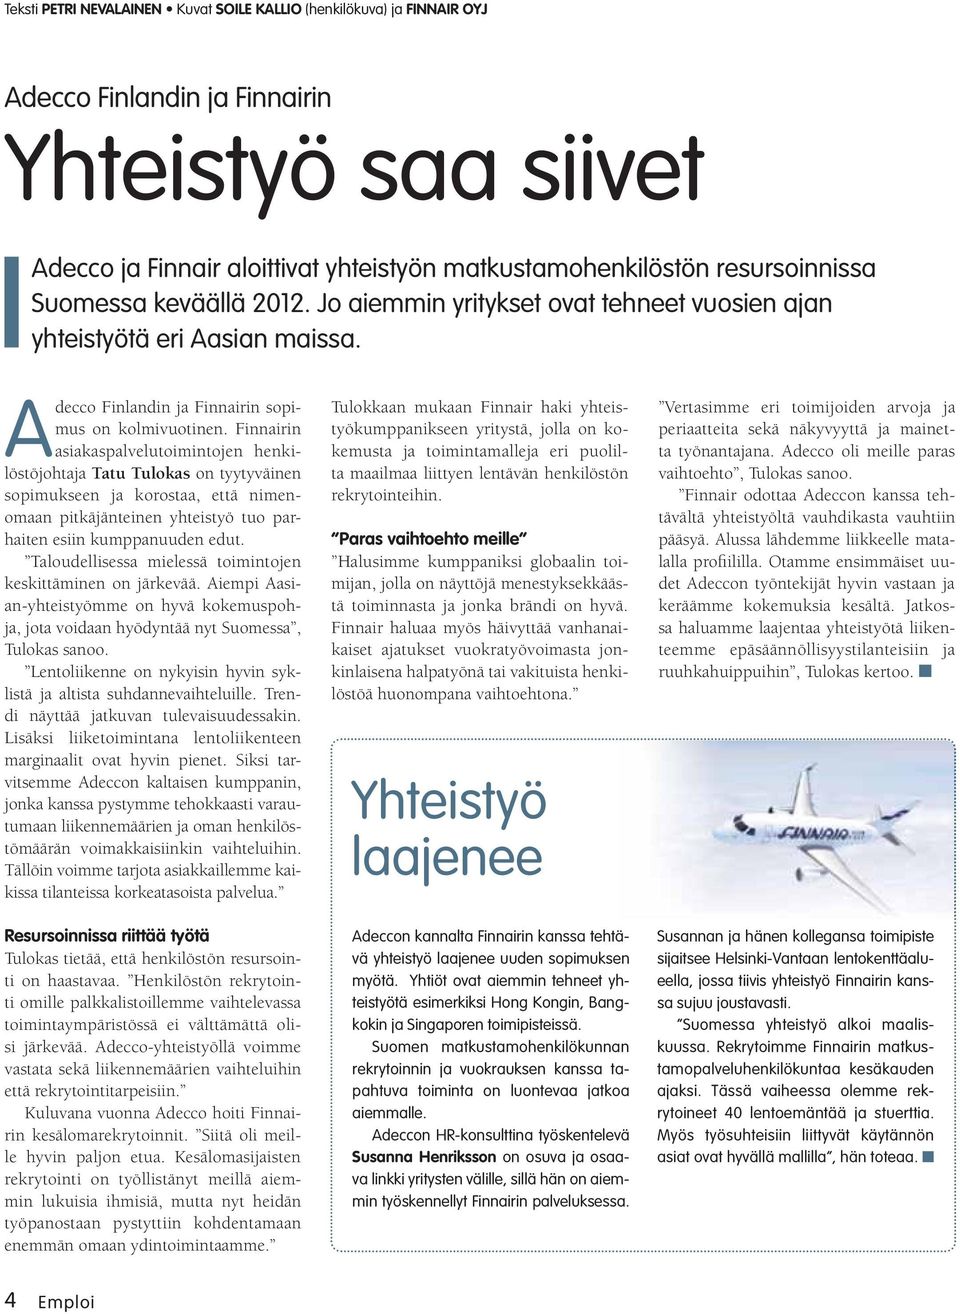 Finnairin asiakaspalvelutoimintojen henkilöstöjohtaja Tatu Tulokas on tyytyväinen sopimukseen ja korostaa, että nimenomaan pitkäjänteinen yhteistyö tuo parhaiten esiin kumppanuuden edut.